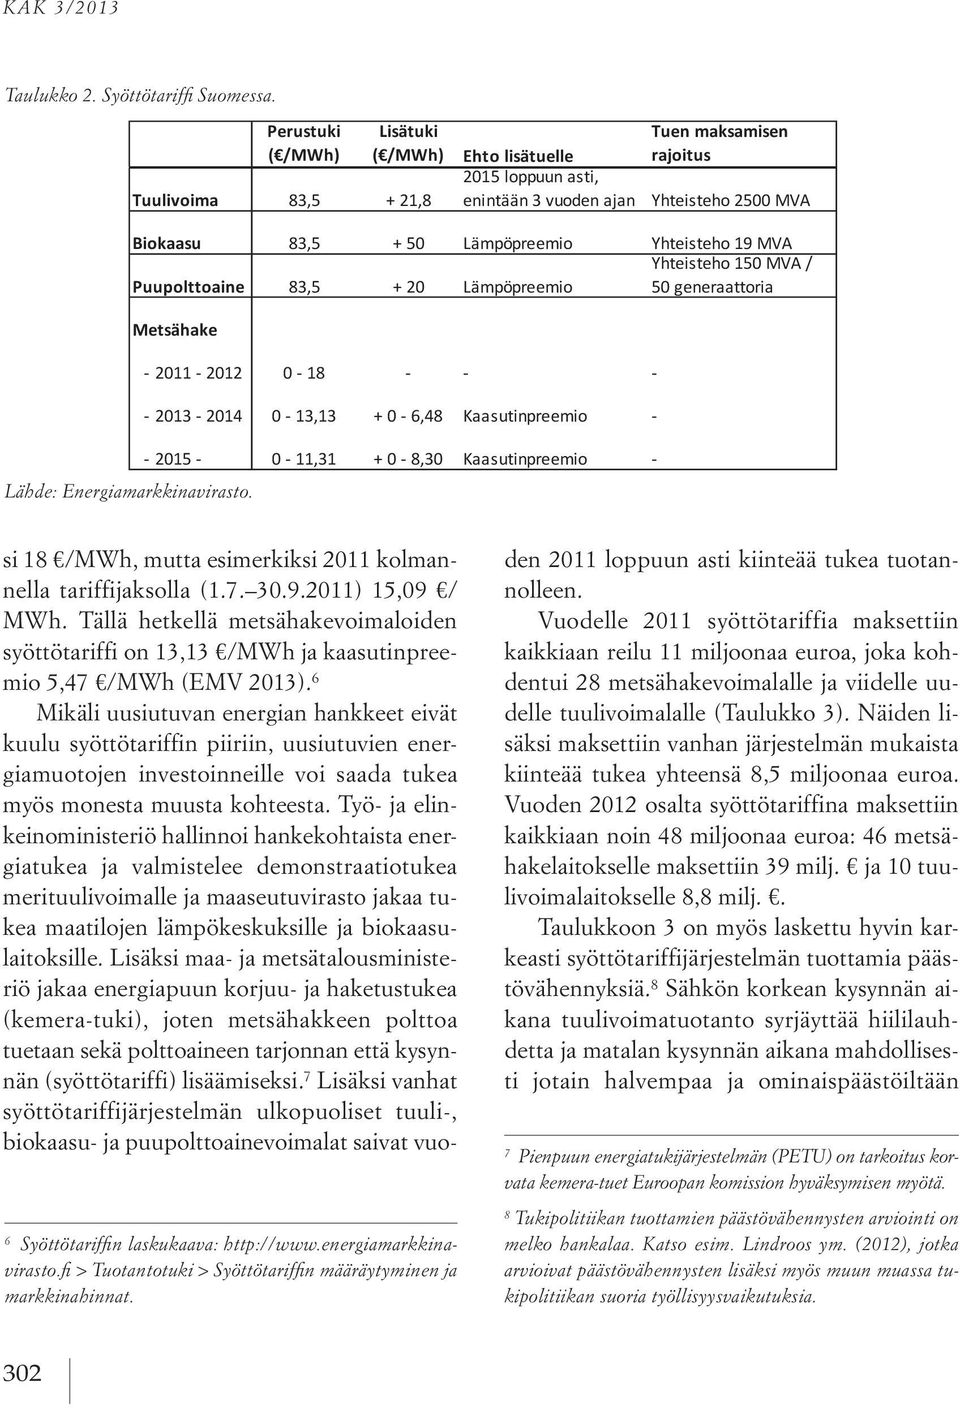 *** 7,5 % - 15 % asennetusta kapasiteetista riippuen. Lähde: RES LEGAL (2012). Taulukko 2. Syöttötariffi Suomessa 